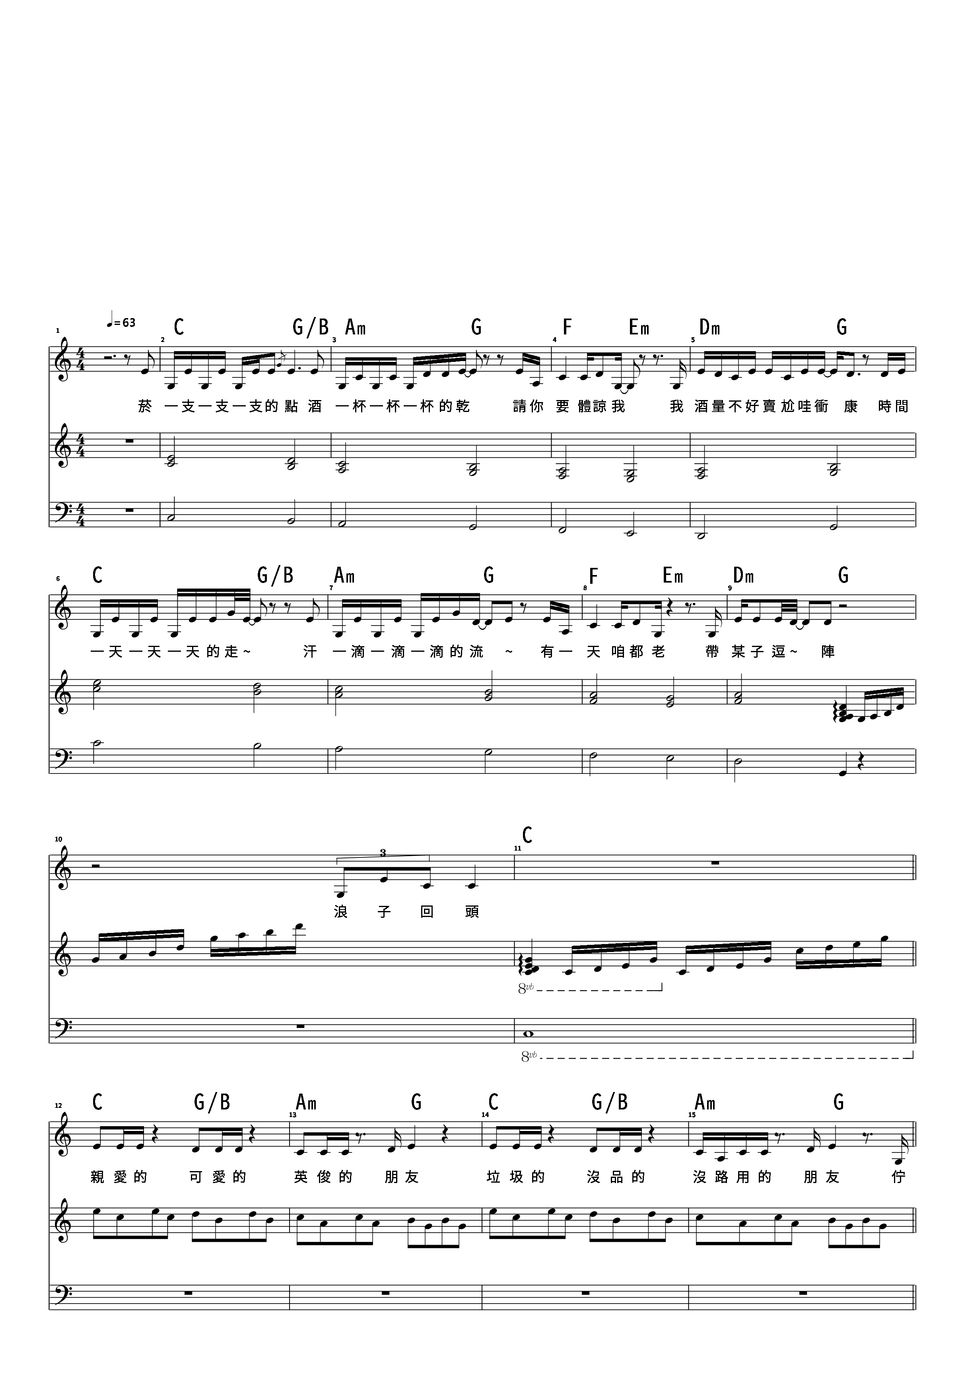 EggPlantEgg - Back Here Again Piano Sheet【Loops Acoustic Piano】 by EggPlantEgg